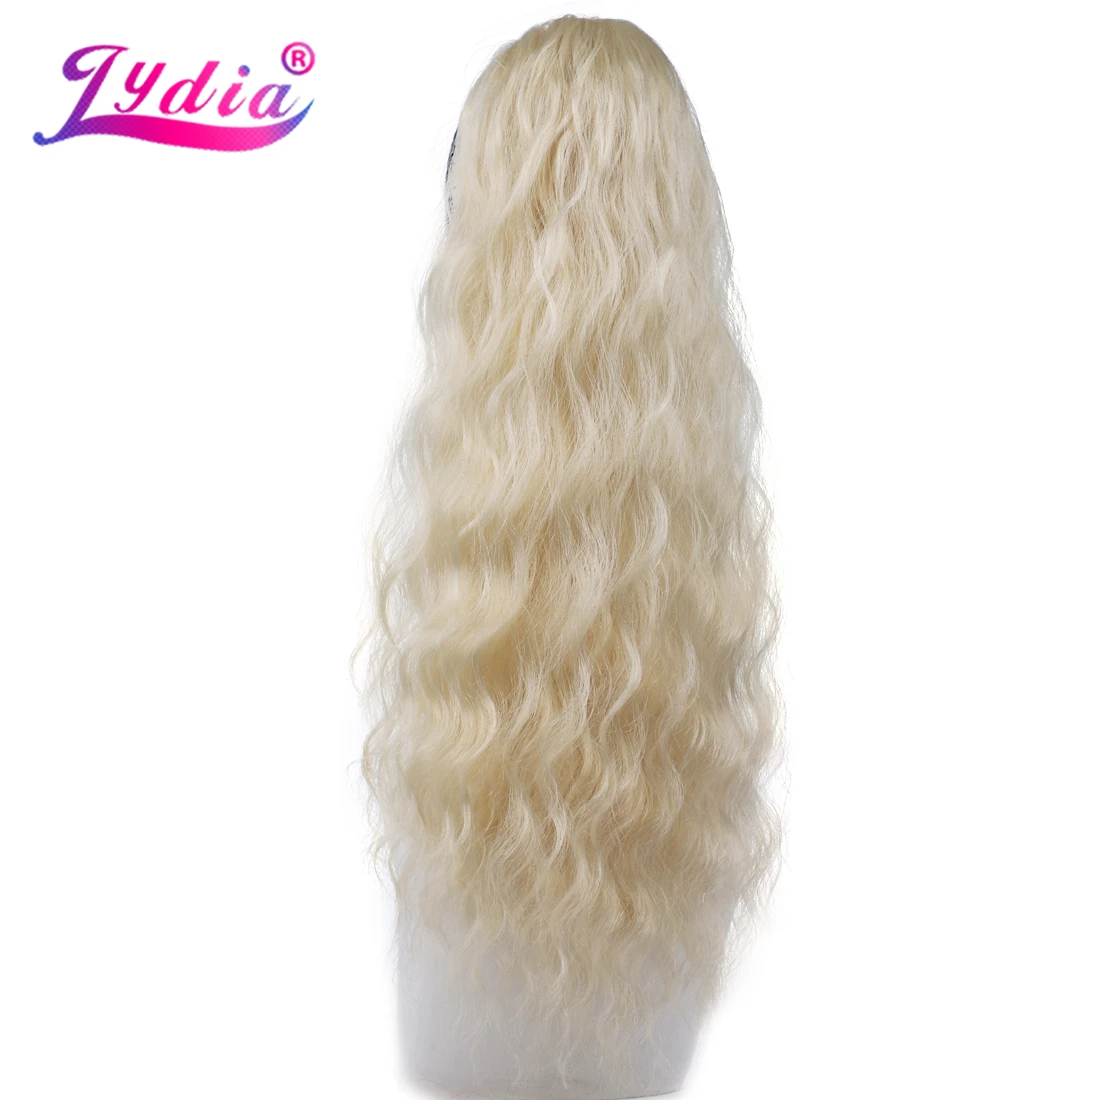 Лидия синтетический 1"-24" шиньон длинные волнистые волосы с двумя пластиковыми гребнями конский хвост Расширения Все цвета доступны блонд